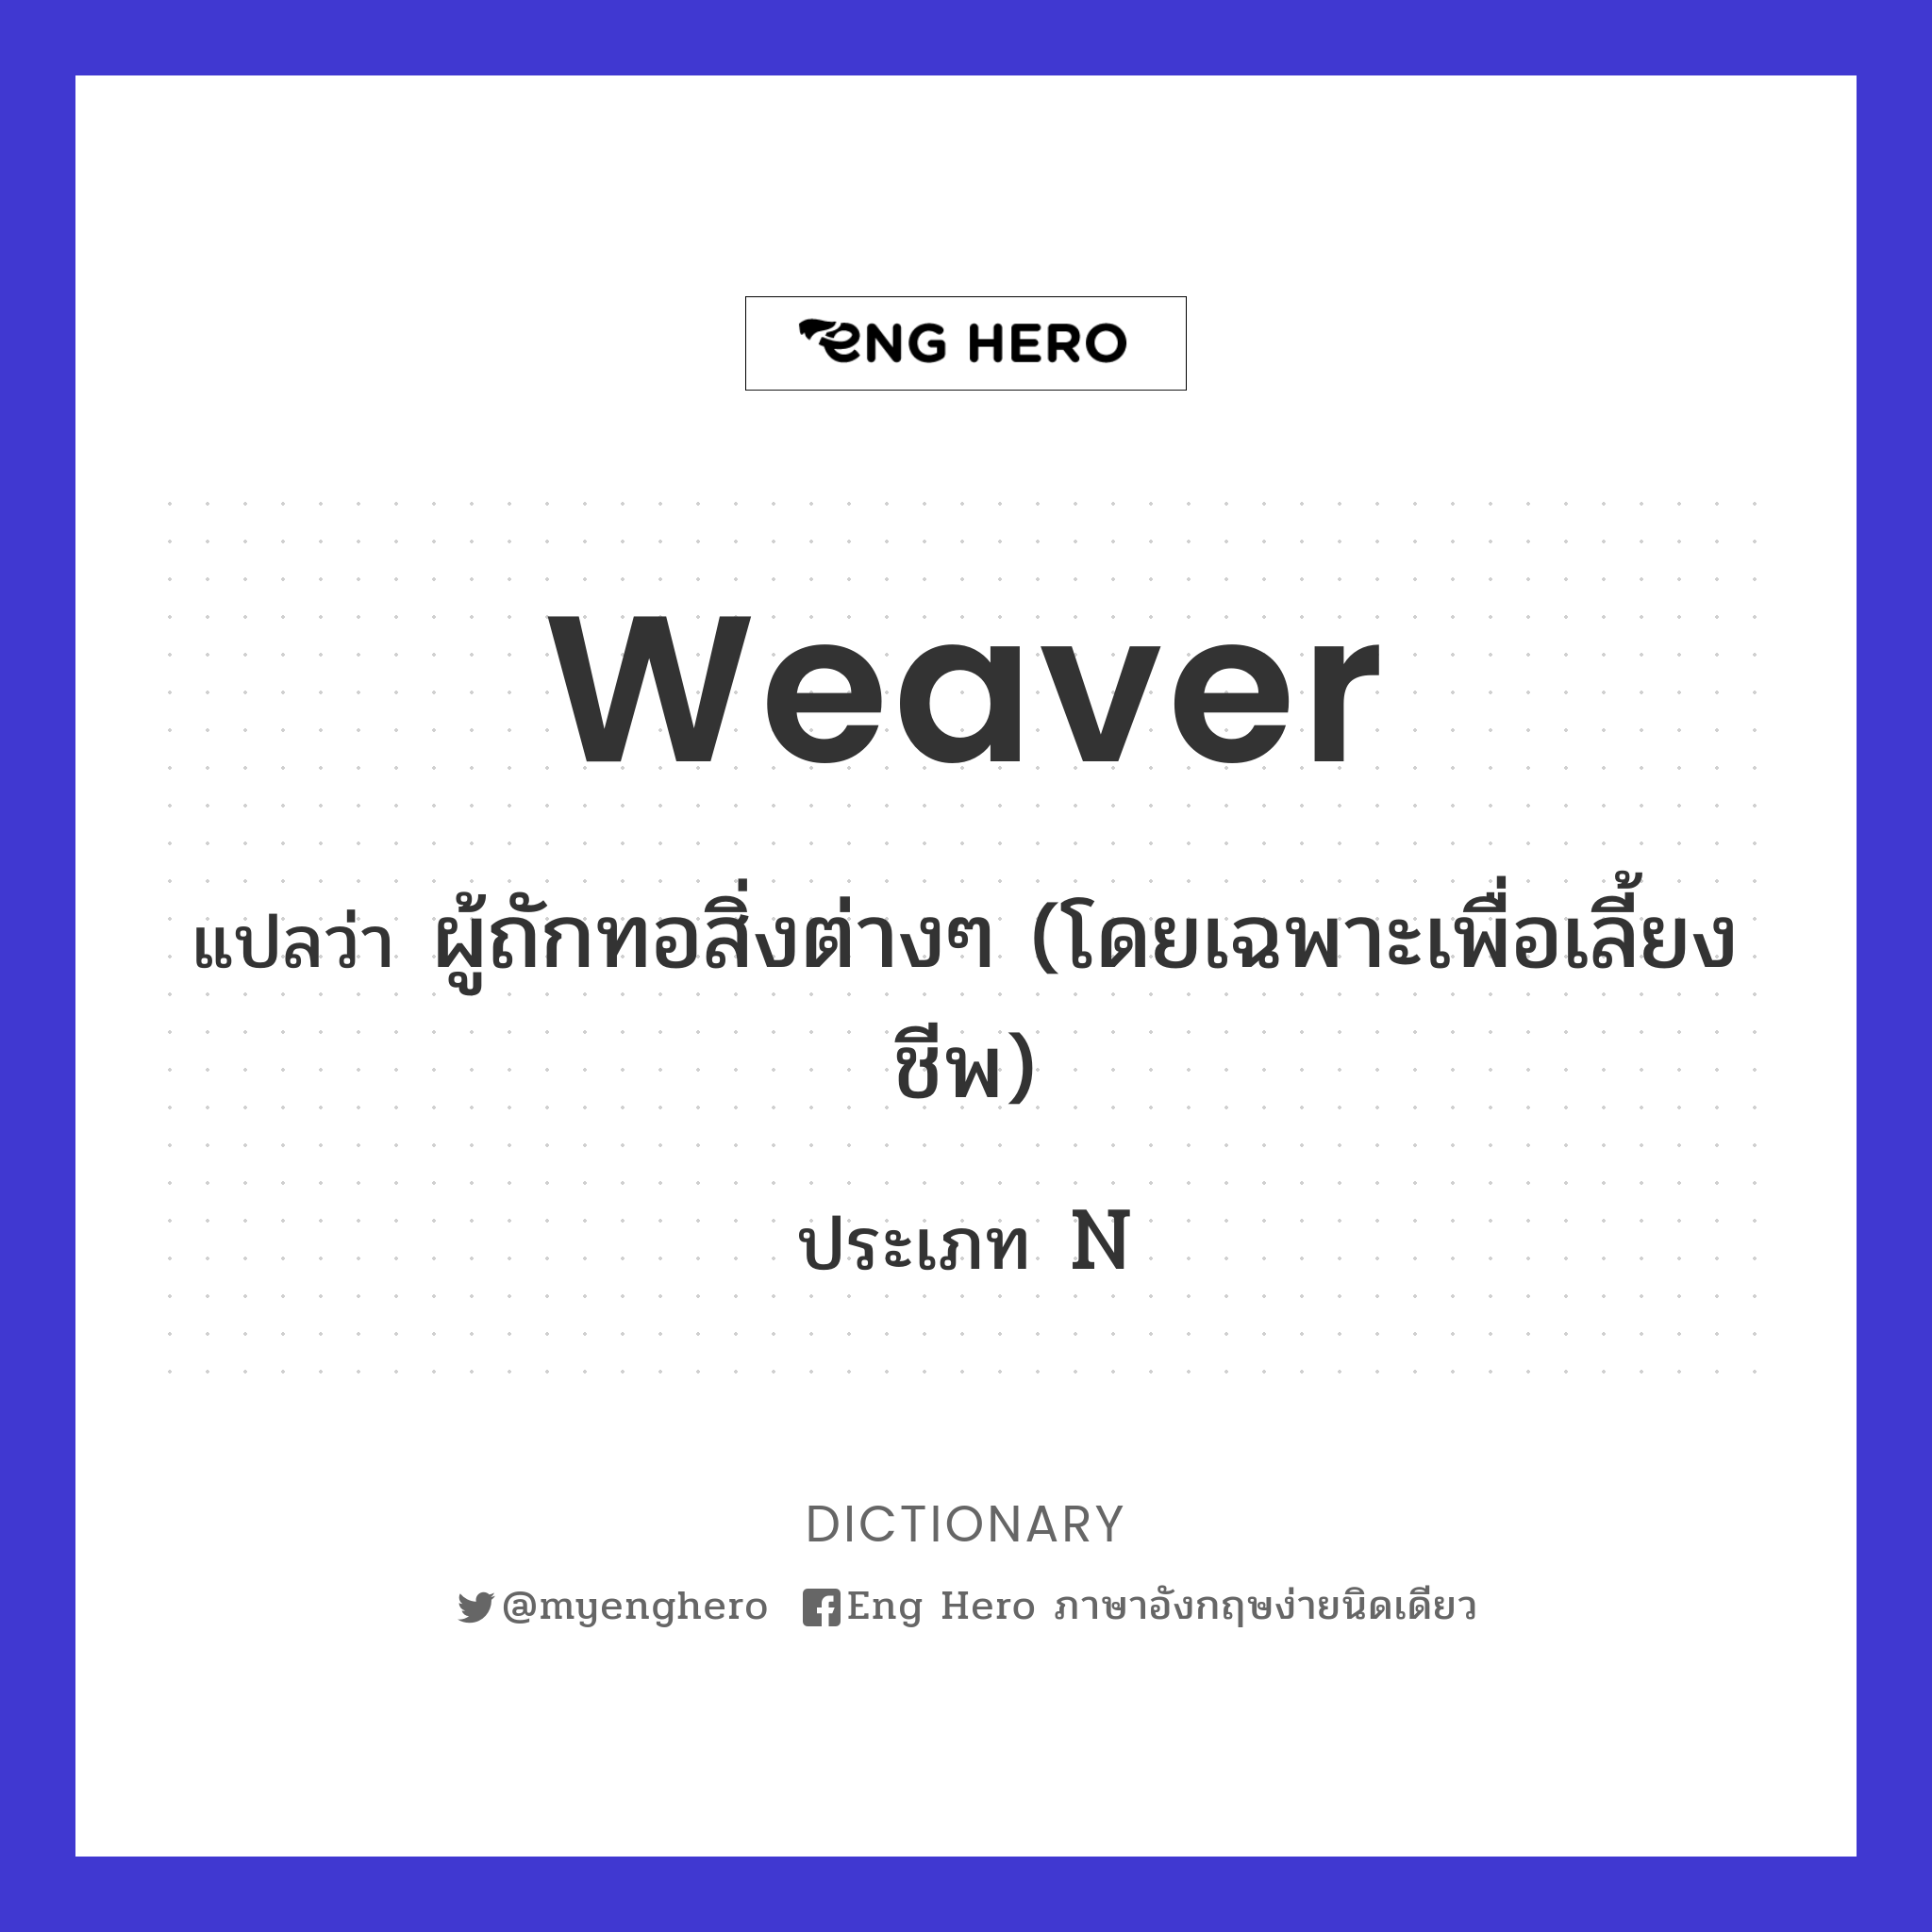 weaver